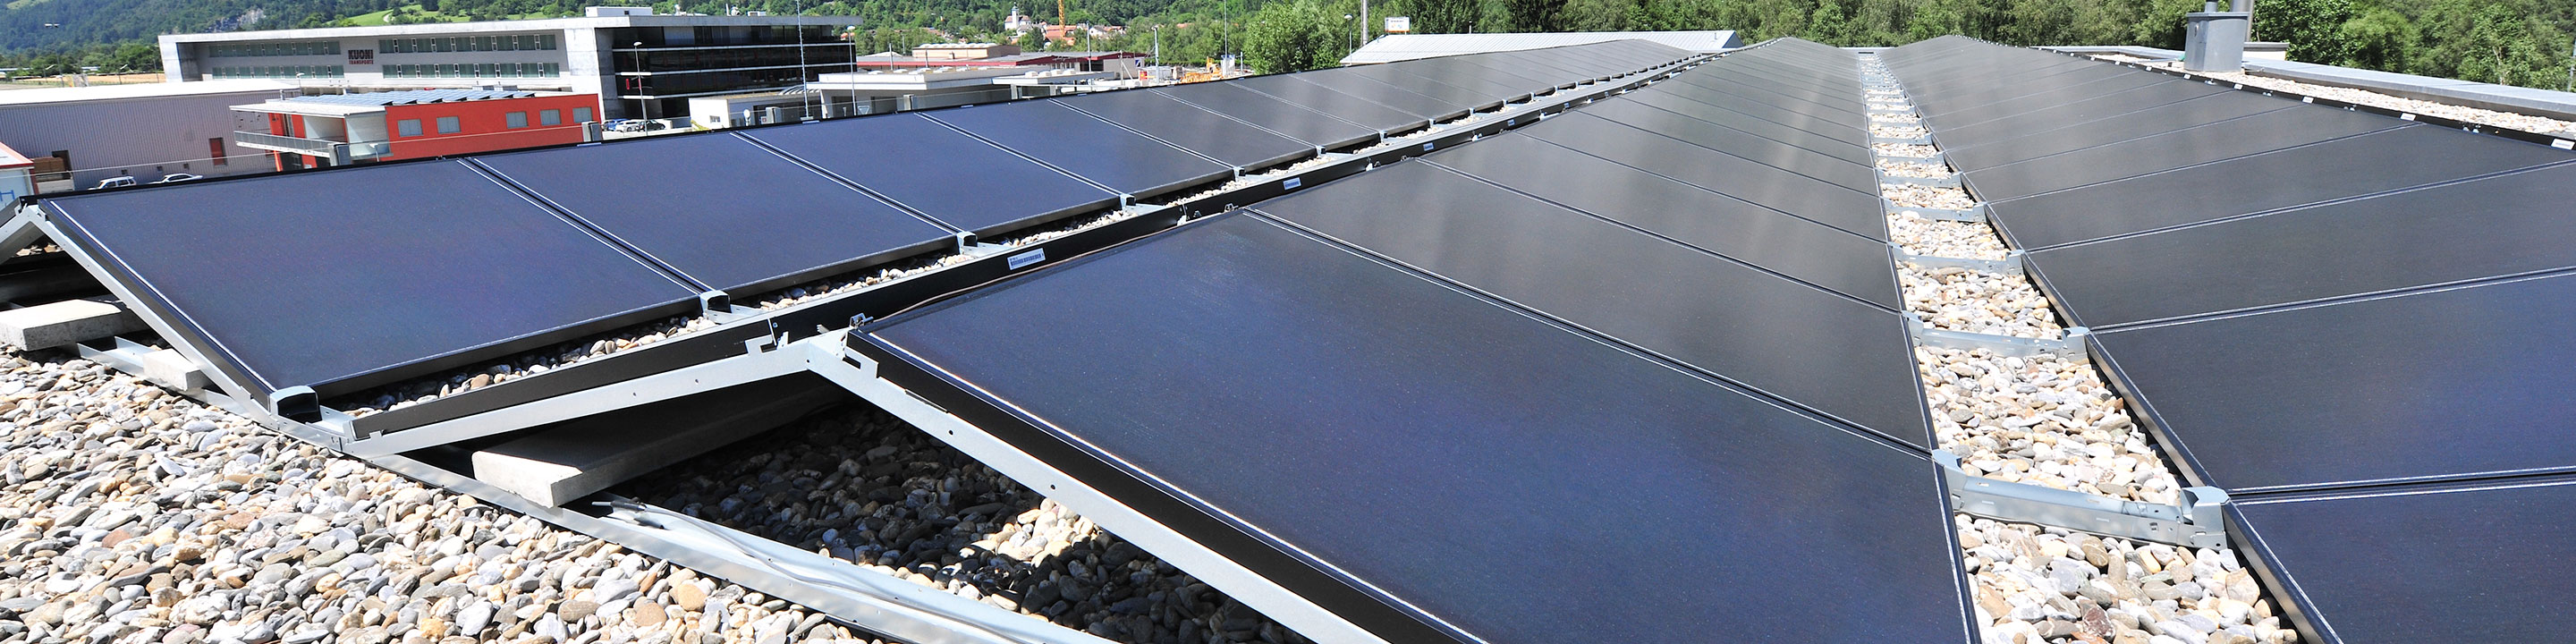 Photovoltaik-Unterkonstruktion mit Solarpanels in Ost-West-Ausrichtung von Richard Brink auf Flachdach mit Kies